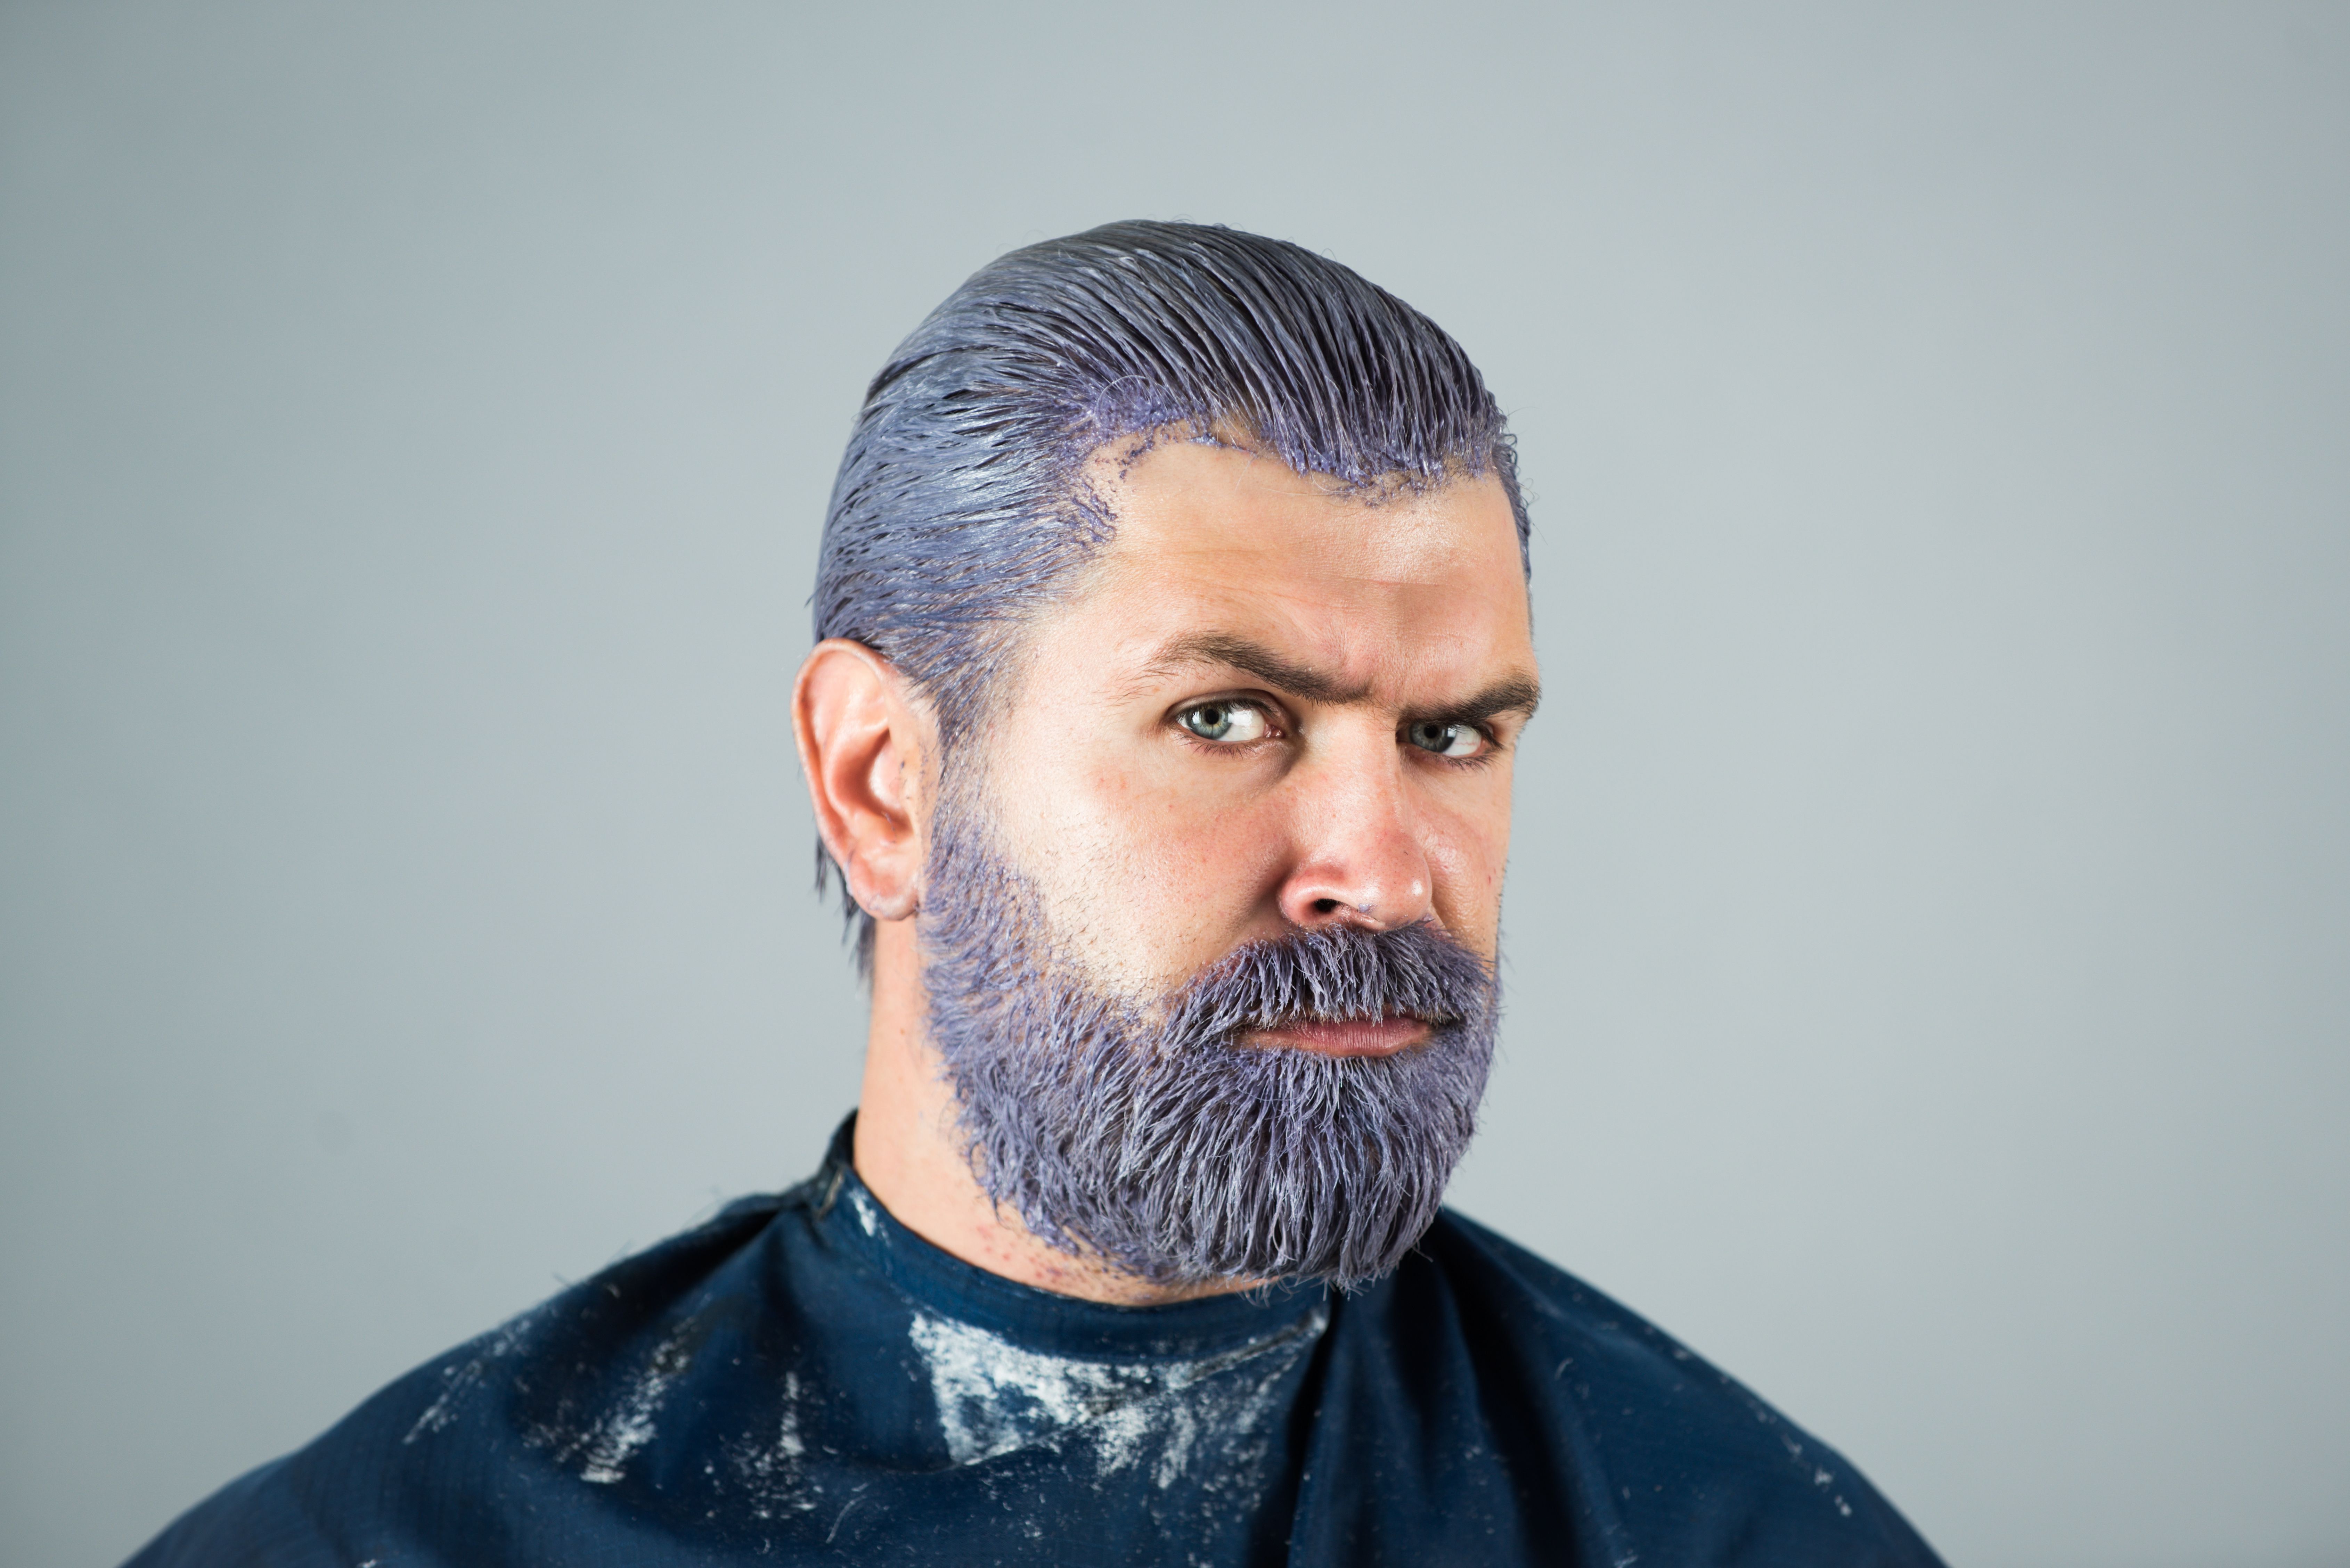 What is a beard dye?